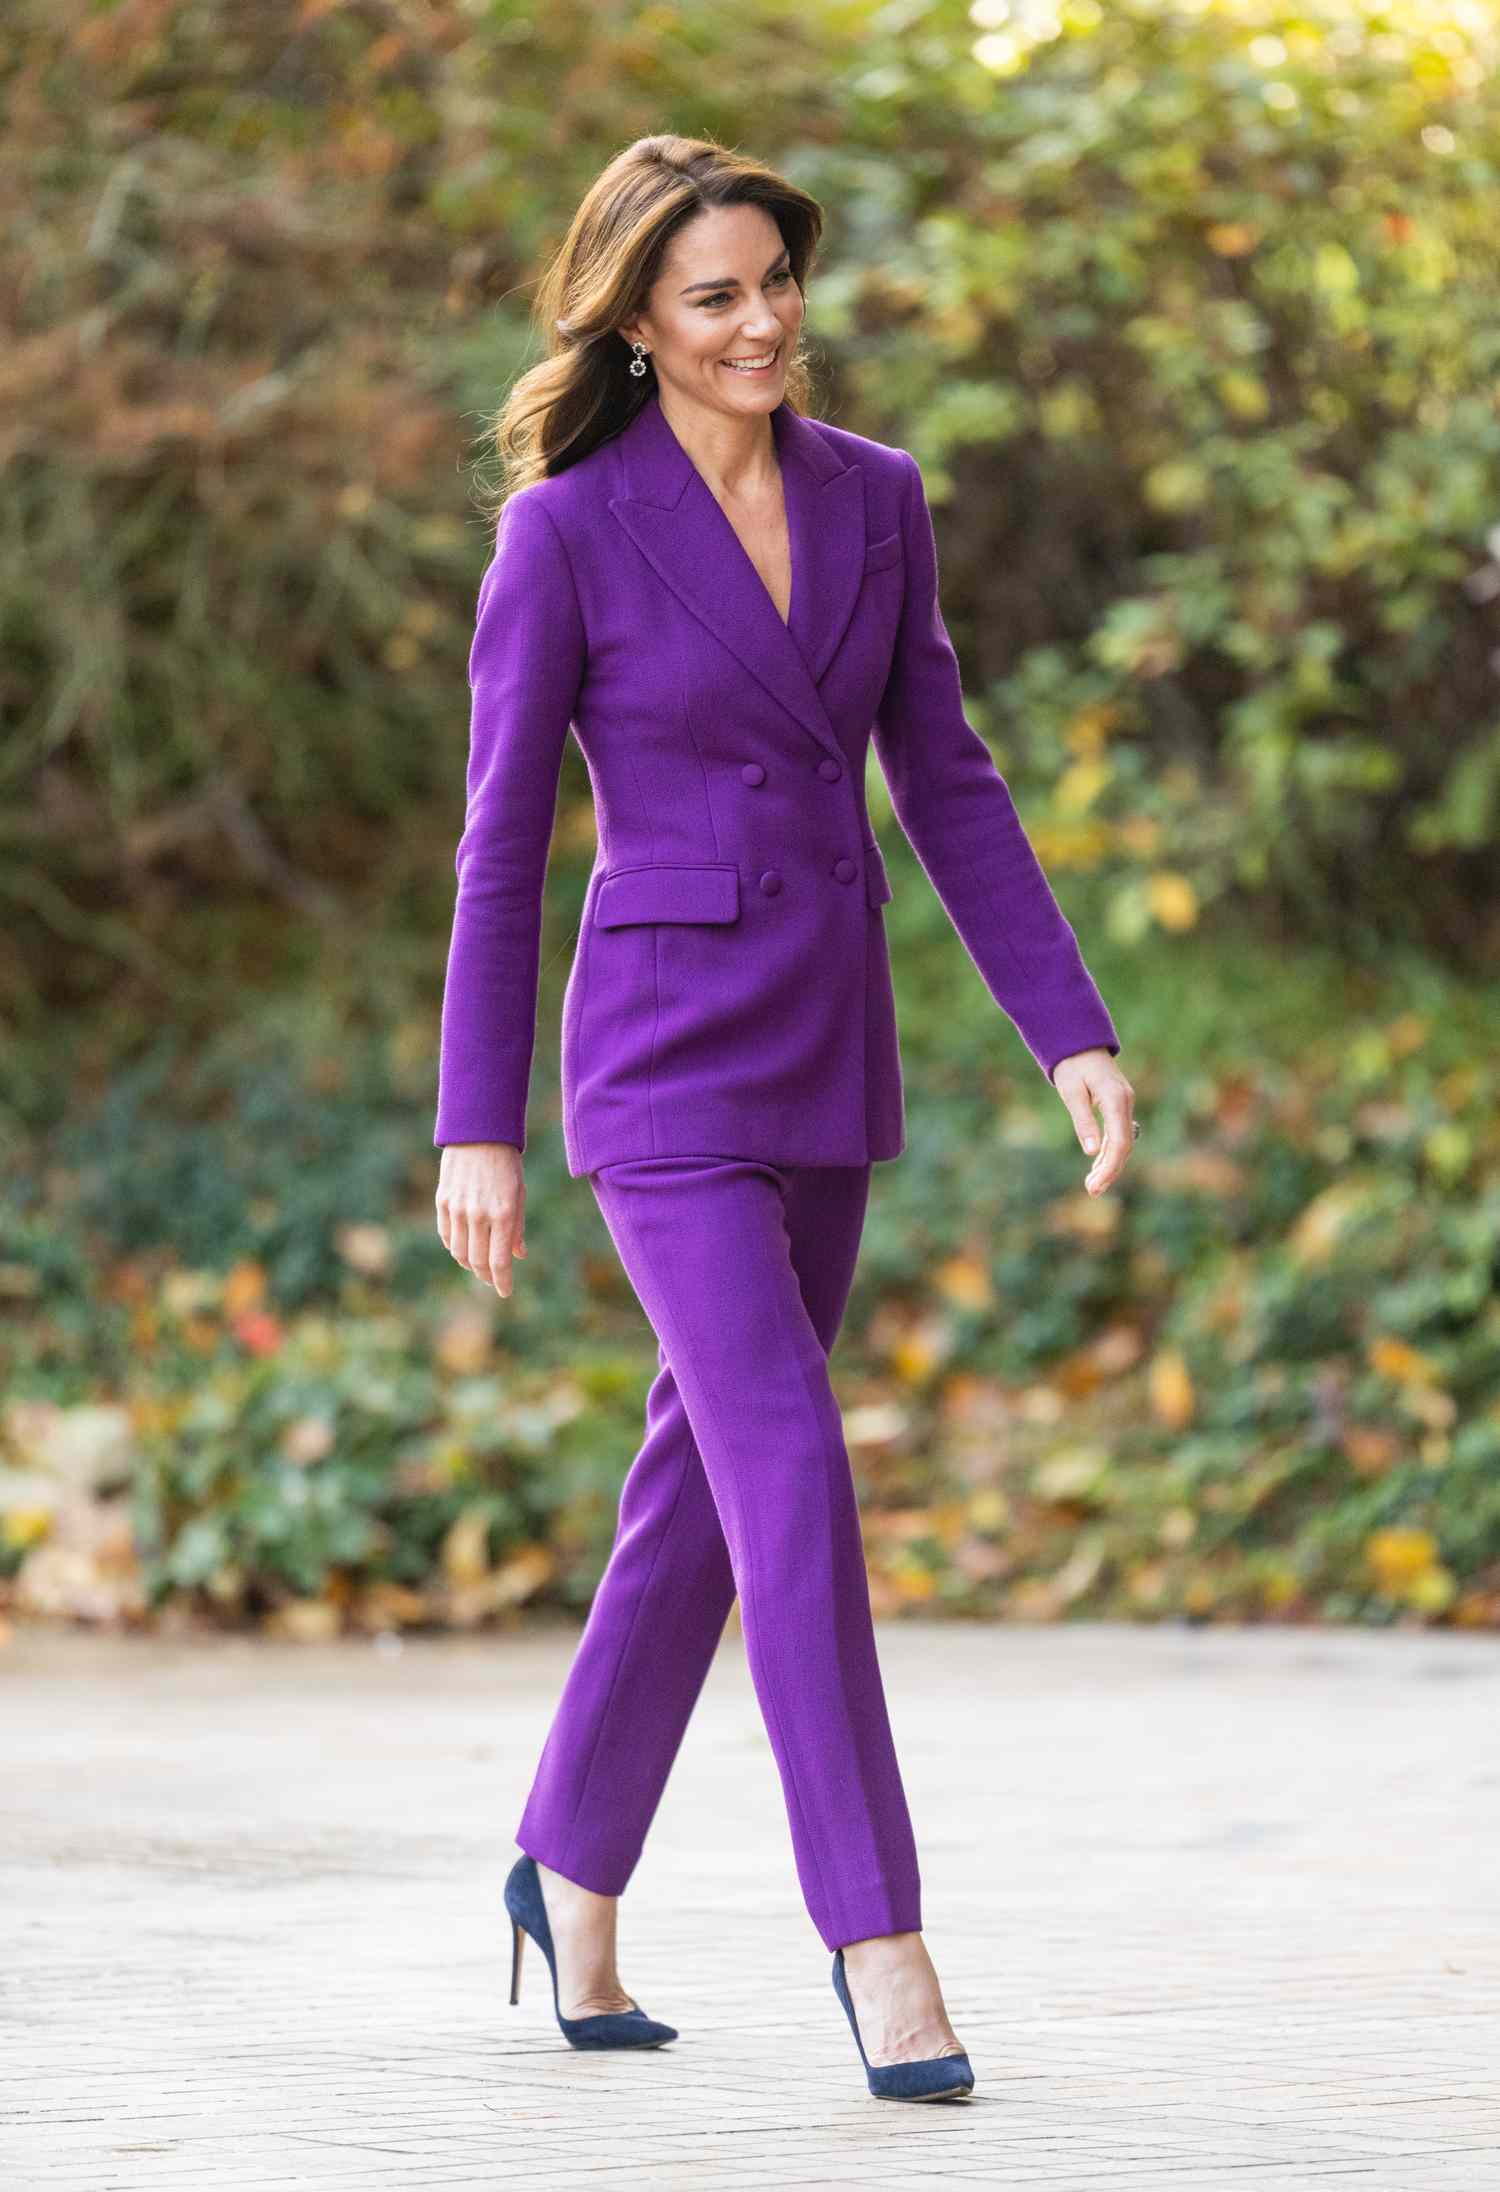 Vương phi Kate Middleton chính là sách mẫu diện trang phục màu sắc sang trọng, tinh tế - Ảnh 4.